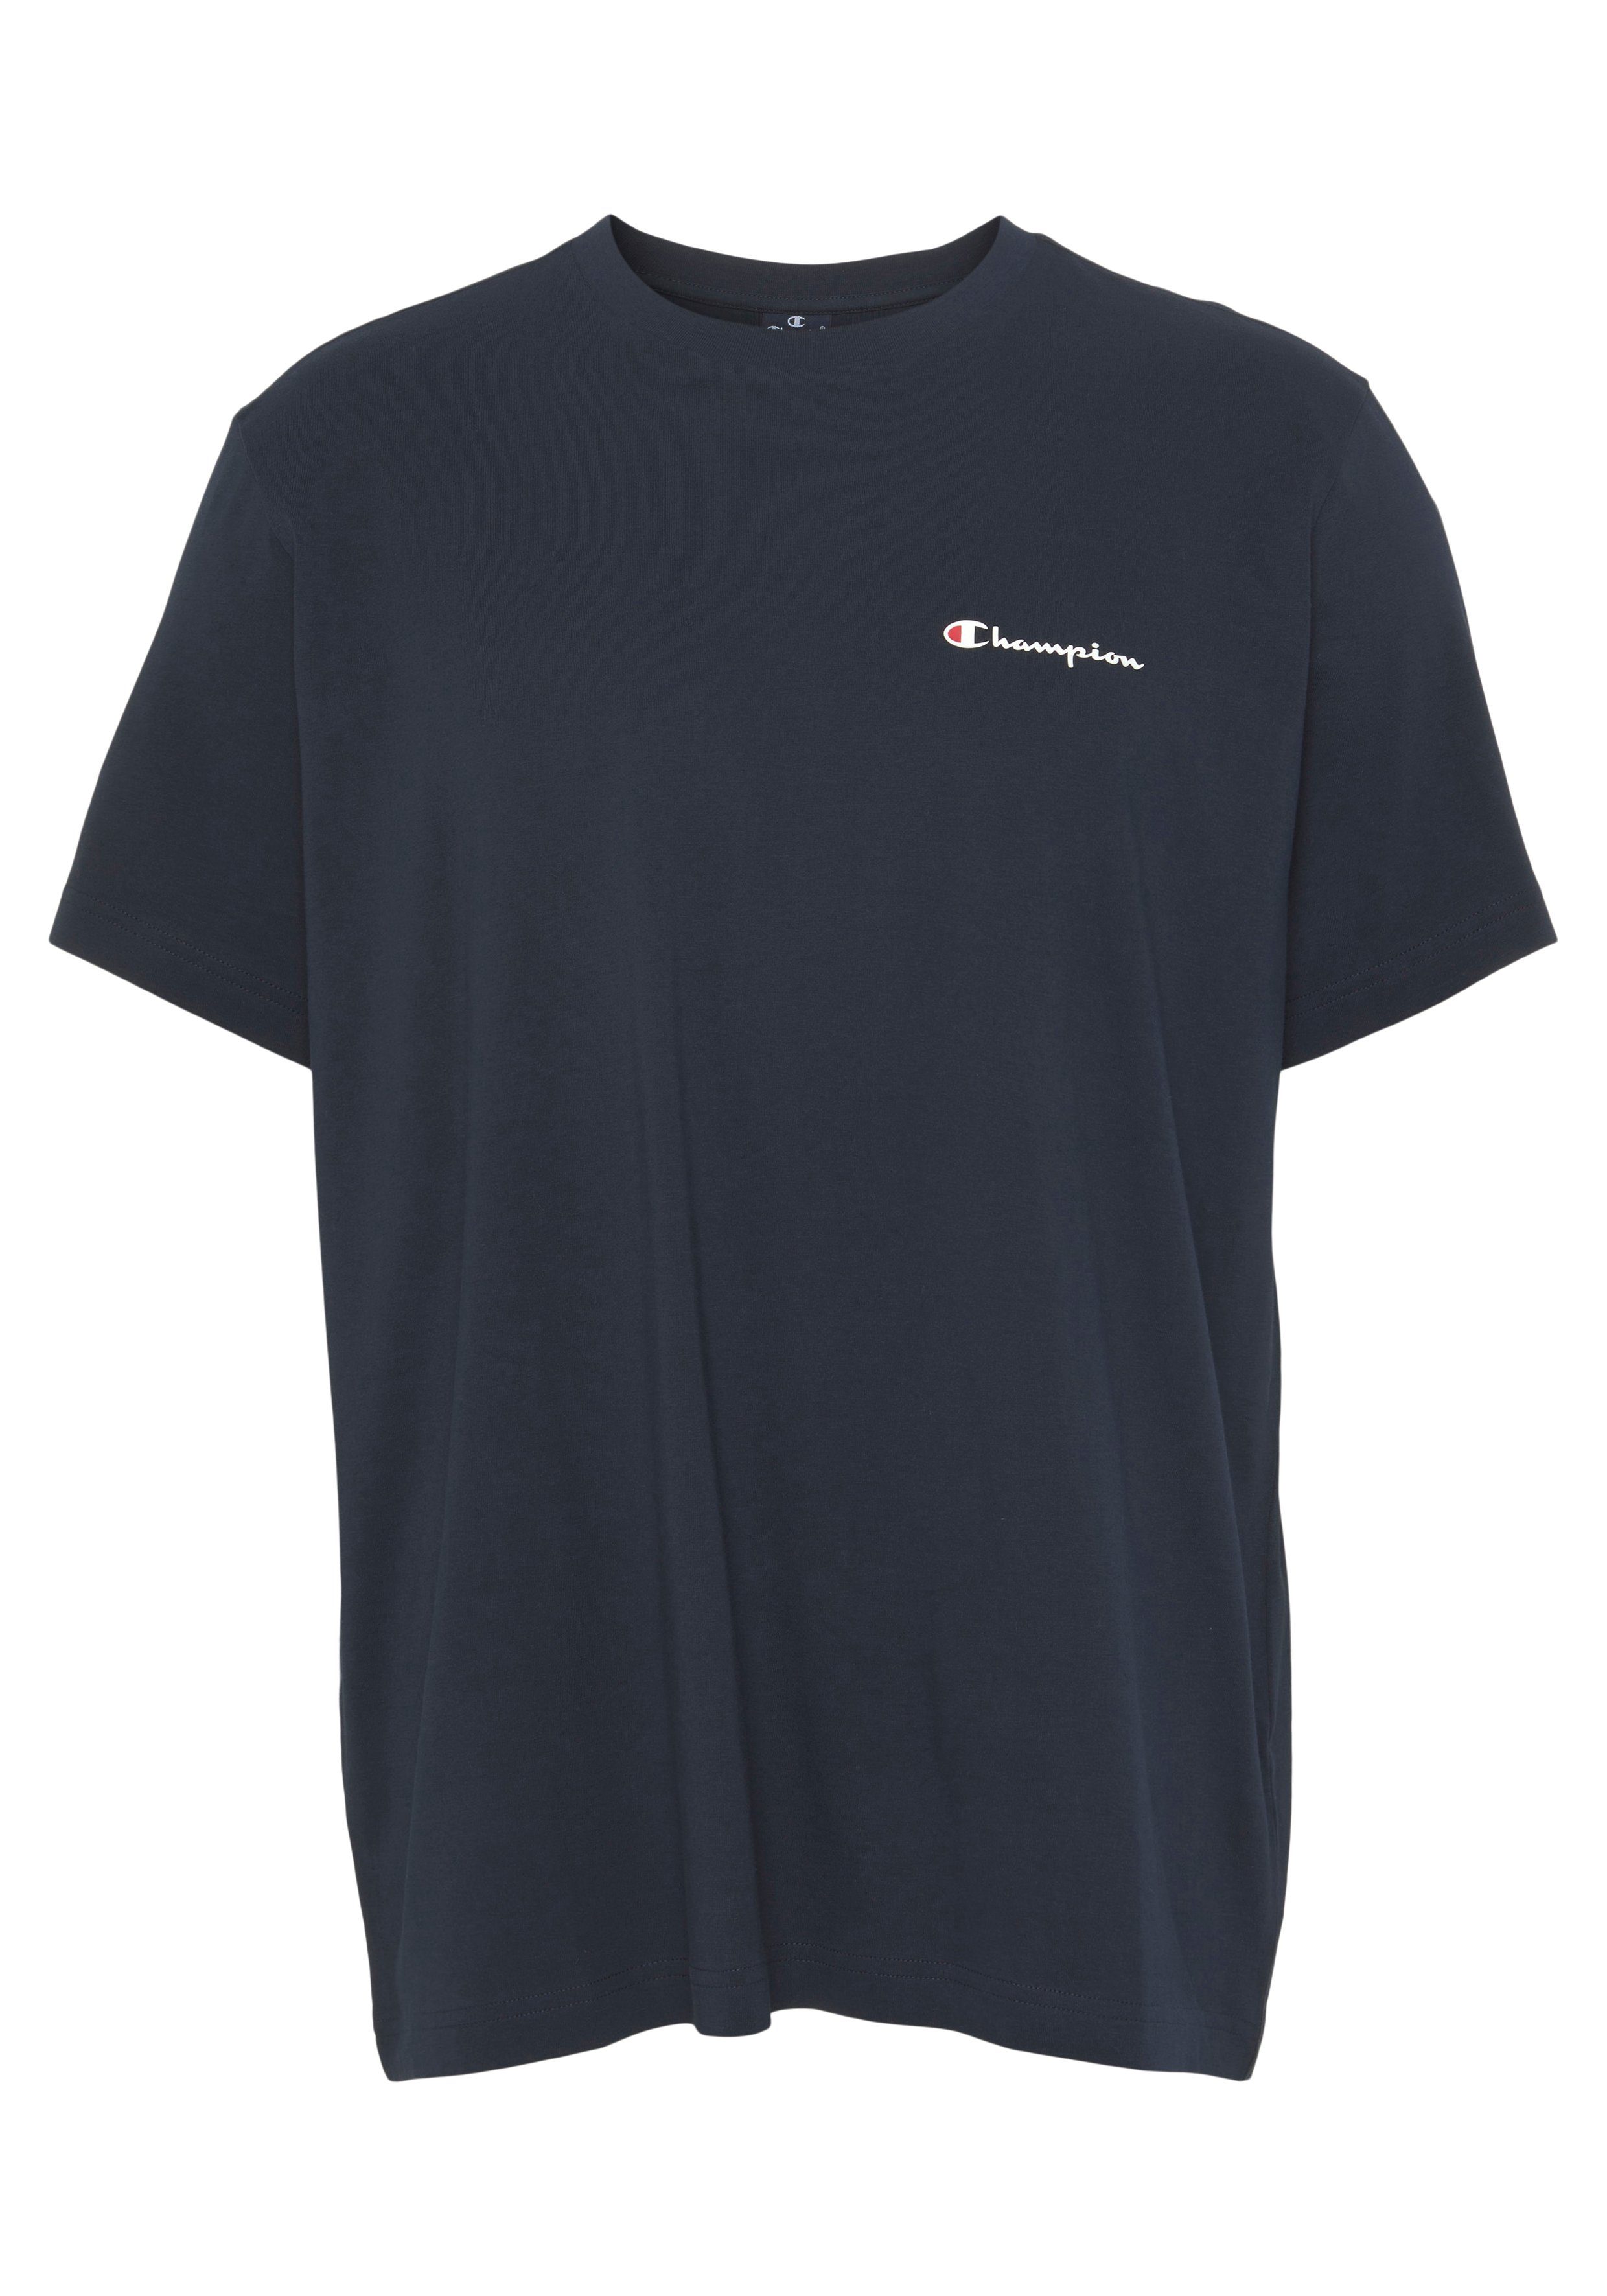 Perfekt Crewneck für Champion Kombiteil als T-Shirt T-Shirt Einzelstück small Classic auch stylishes als den logo, oder